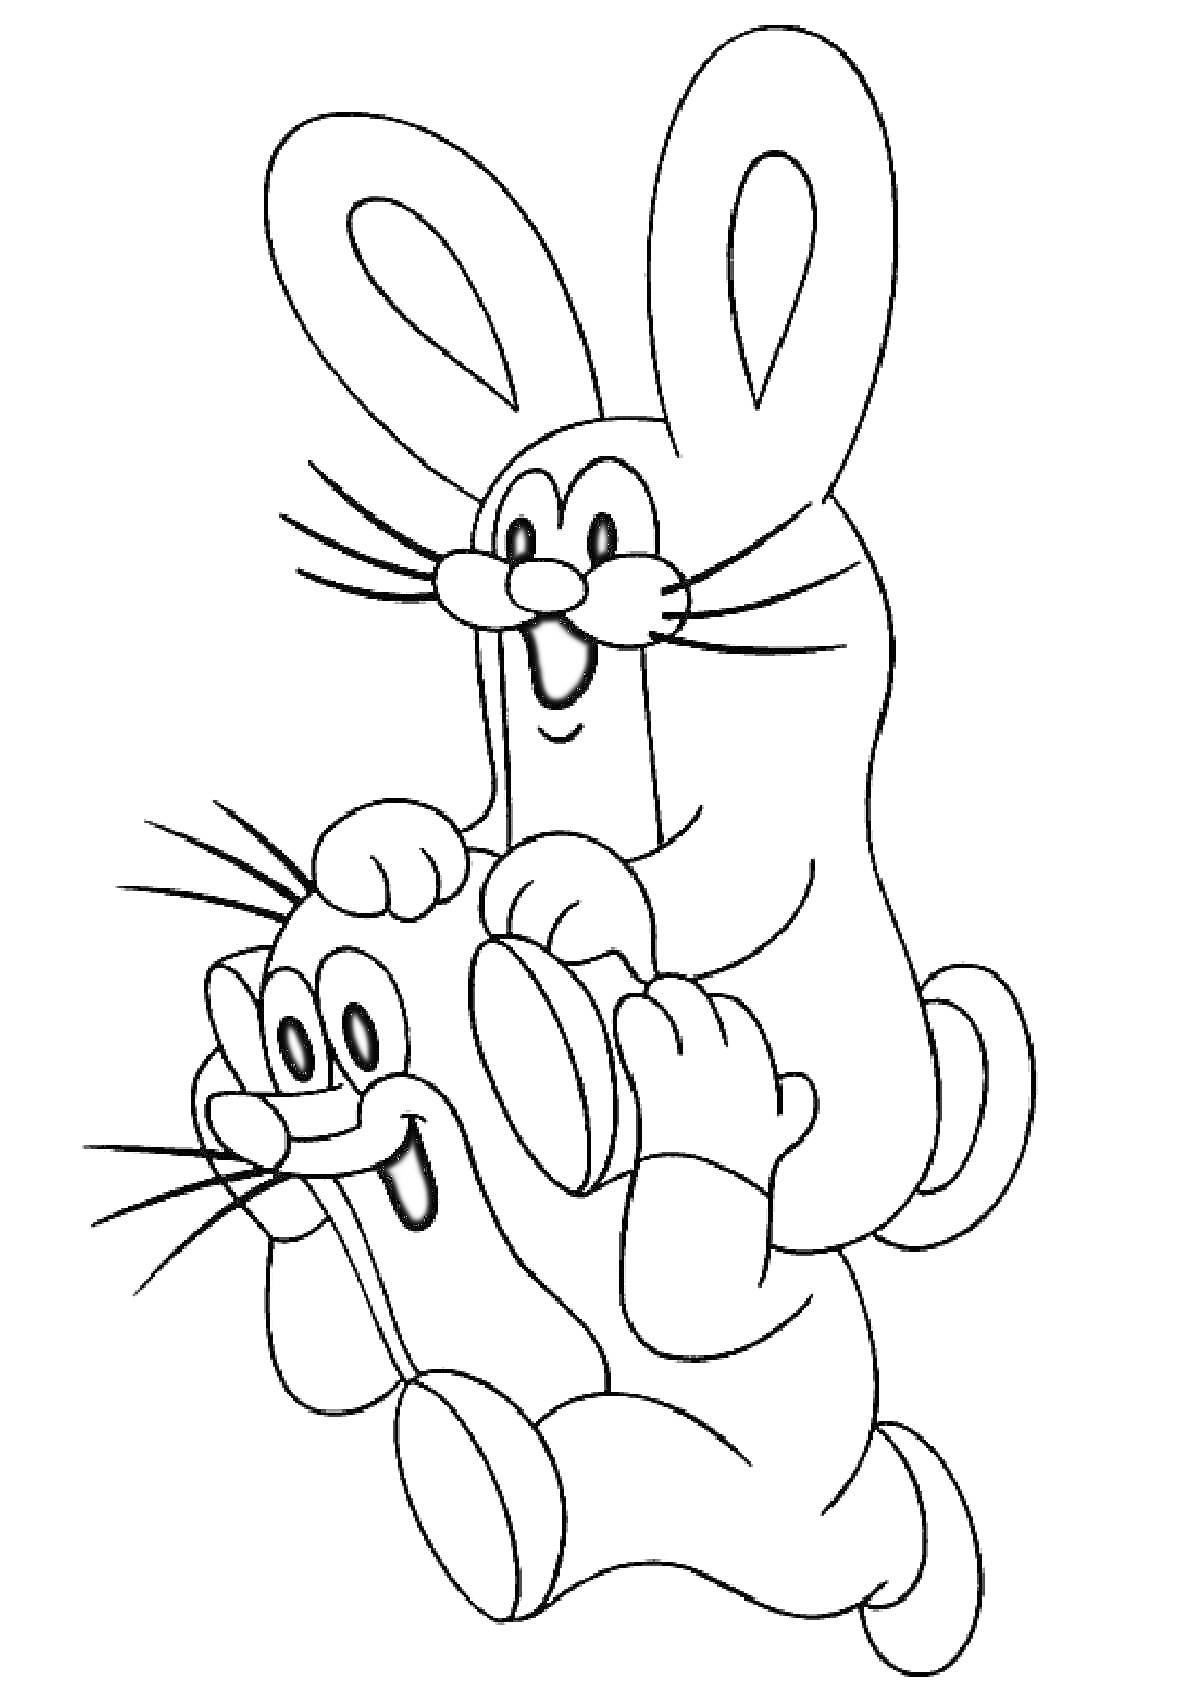 Крот и заяц, крот держит зайца на плечах